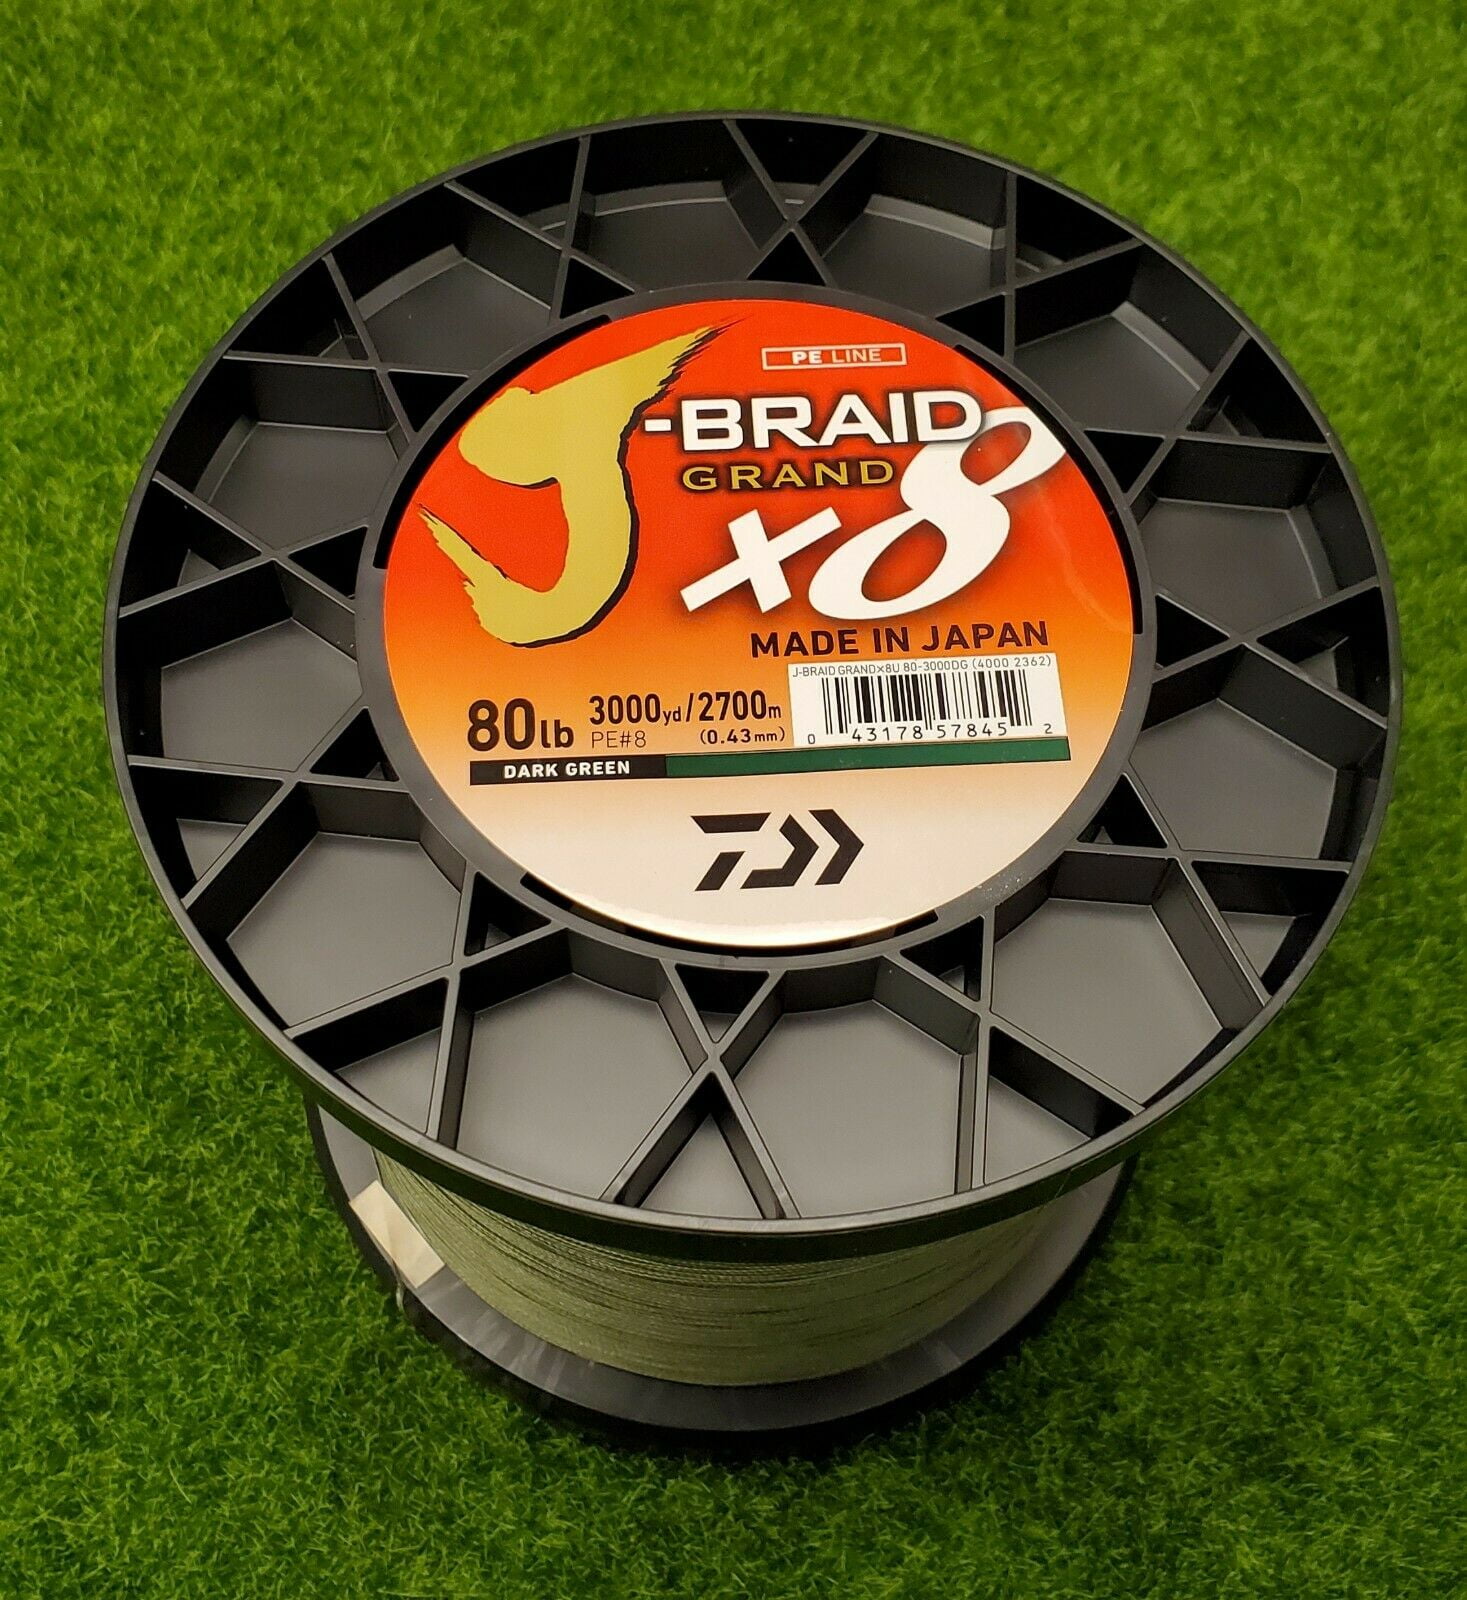 Daiwa J-Braid x8 GRAND Braided Line DARK GREEN 80lb, 3000yd -  JBGD8U80-3000DG 